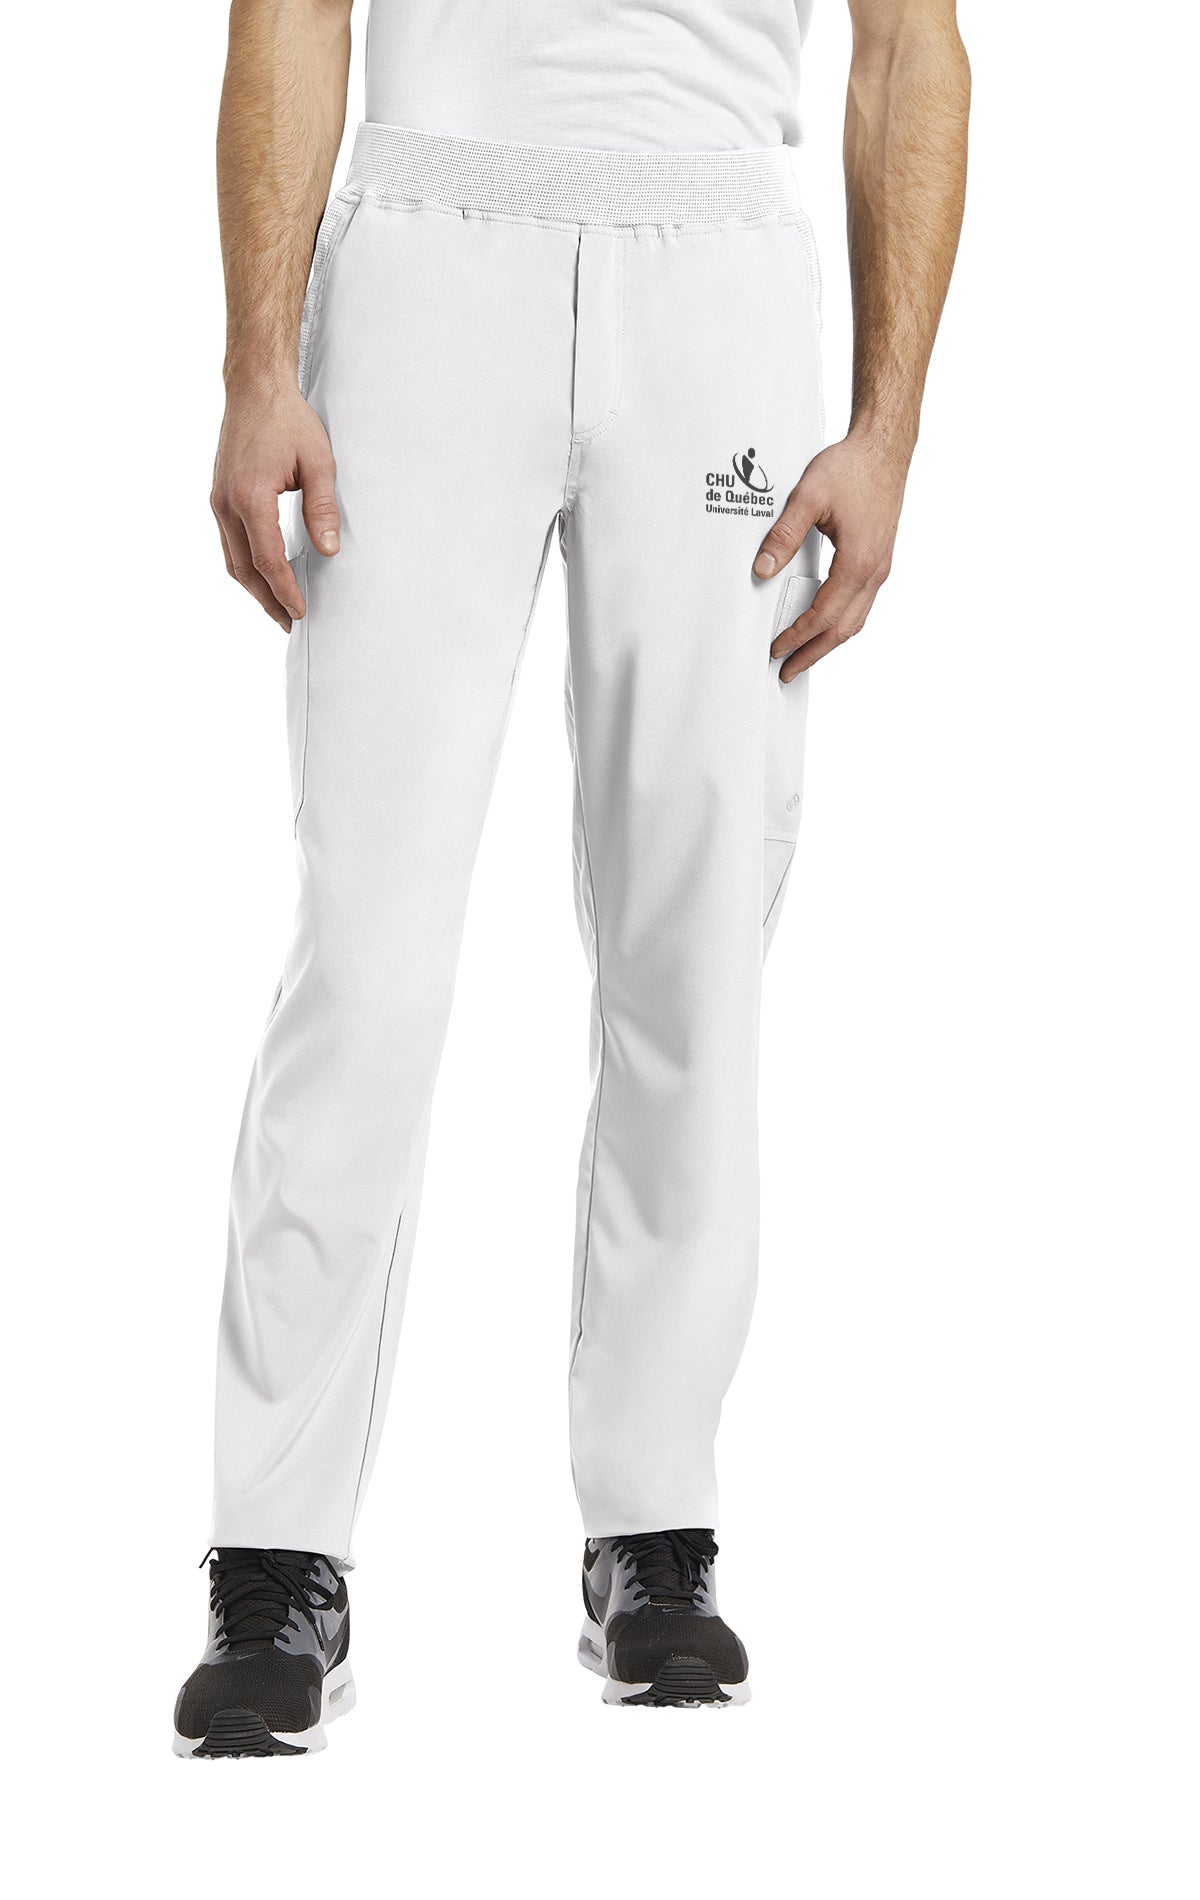 Pantalon de travail pour homme style Yoga White Cross FIT #229CHU blanc